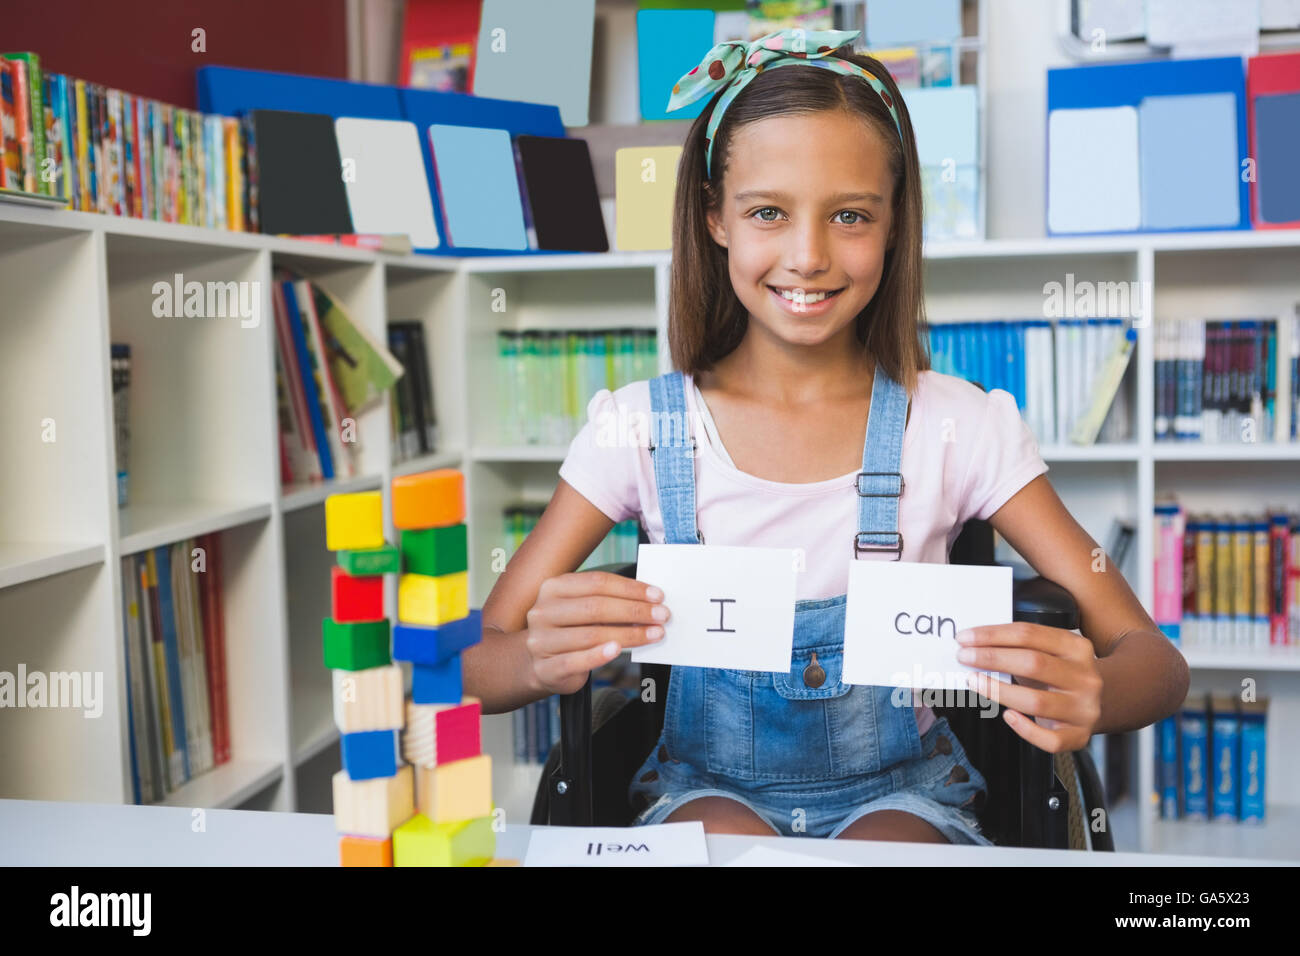 Behindertes Mädchen zeigen Plakat, das ich kann in der Bibliothek liest Stockfoto